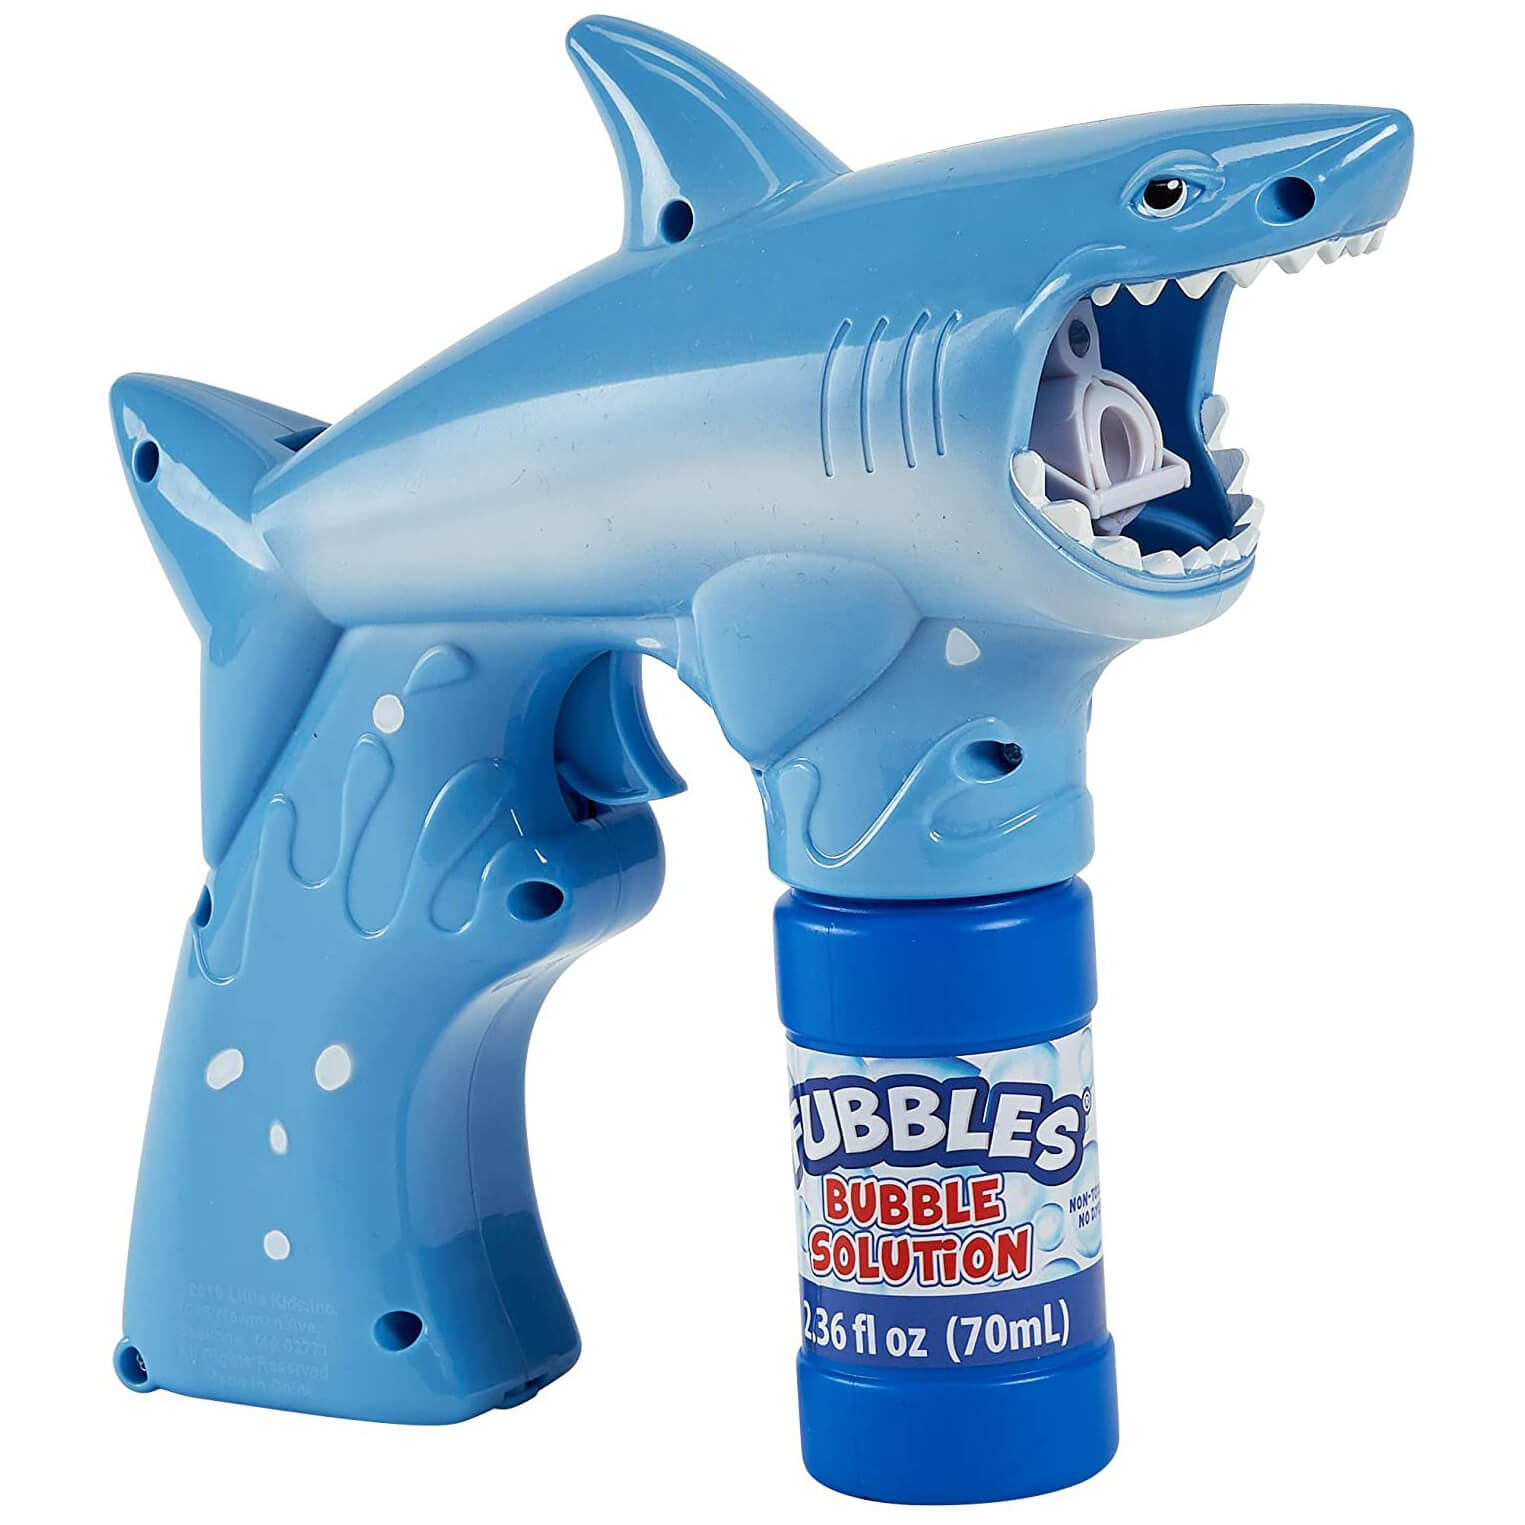 Fubbles Bubble Shark